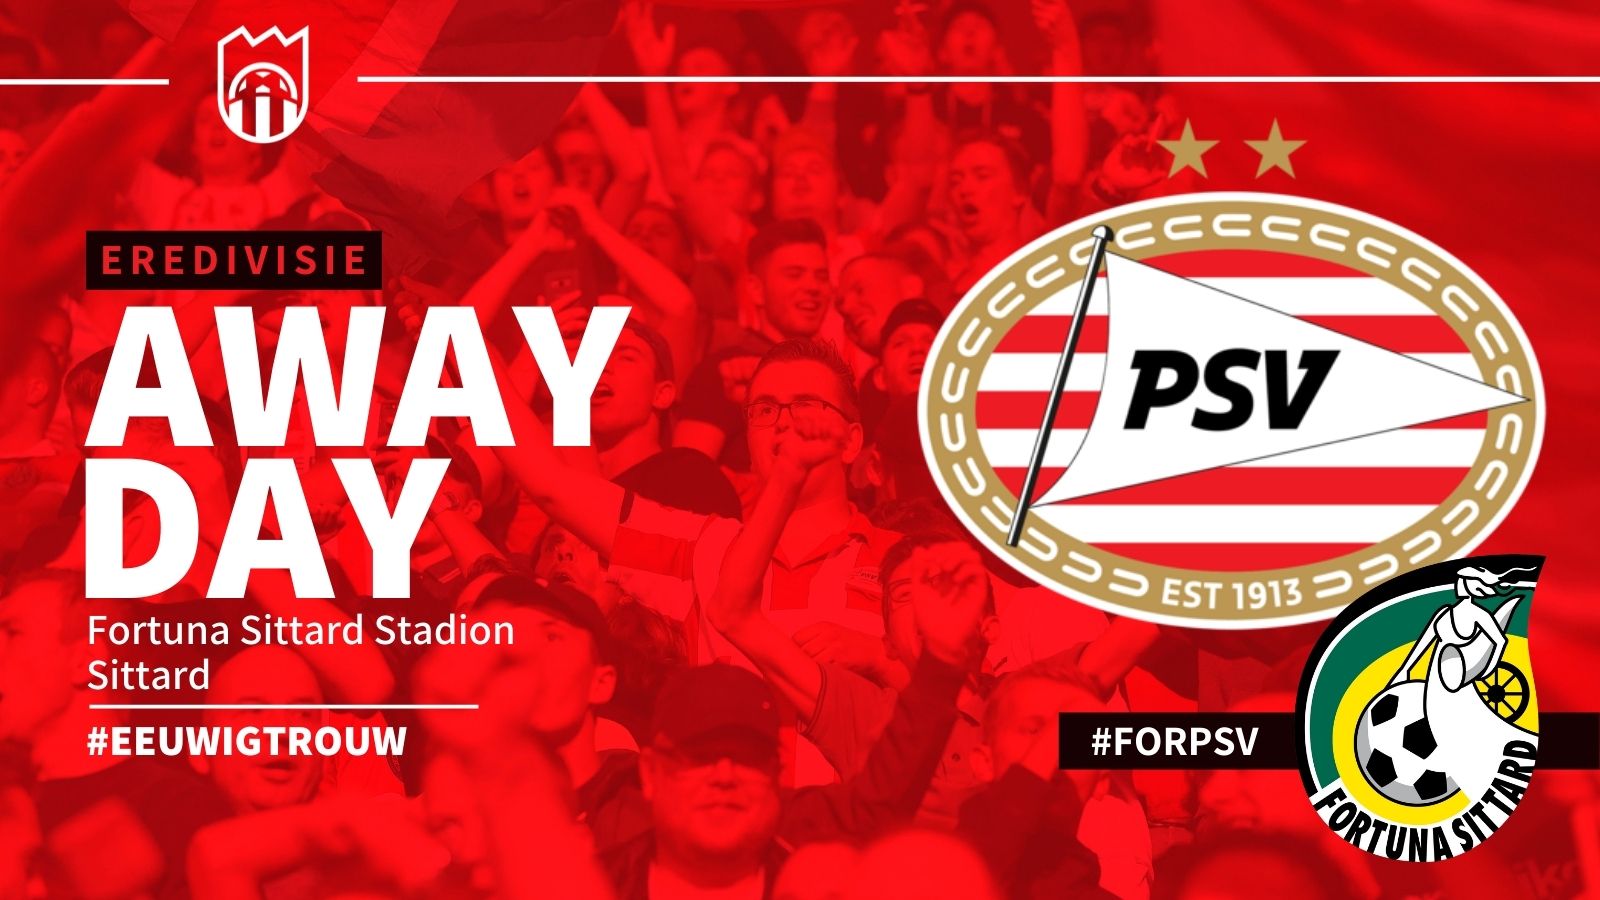 Eredivisie : Fortuna Sittard - PSV (1 - 4)